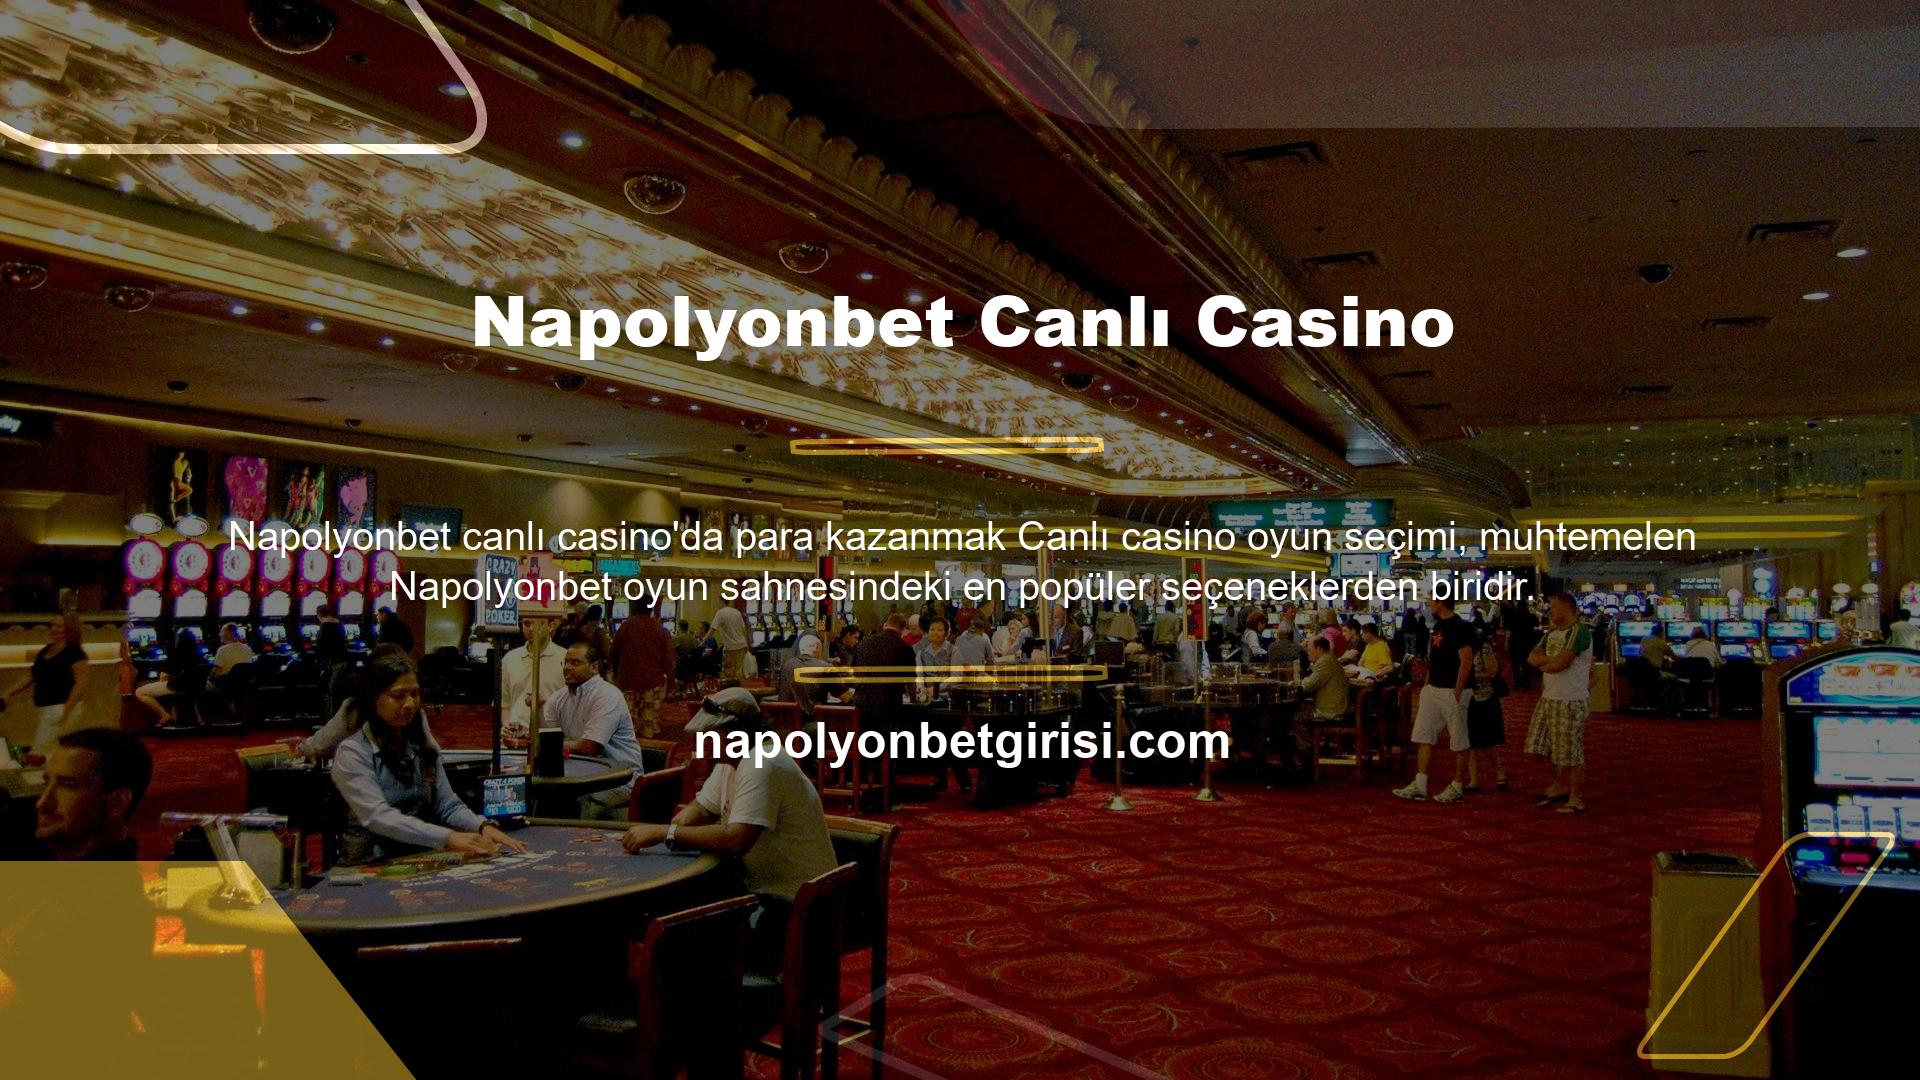 Napolyonbet Canlı Casino'da kazanmanın ne kadar kolay olduğunu merak ediyor olabilirsiniz